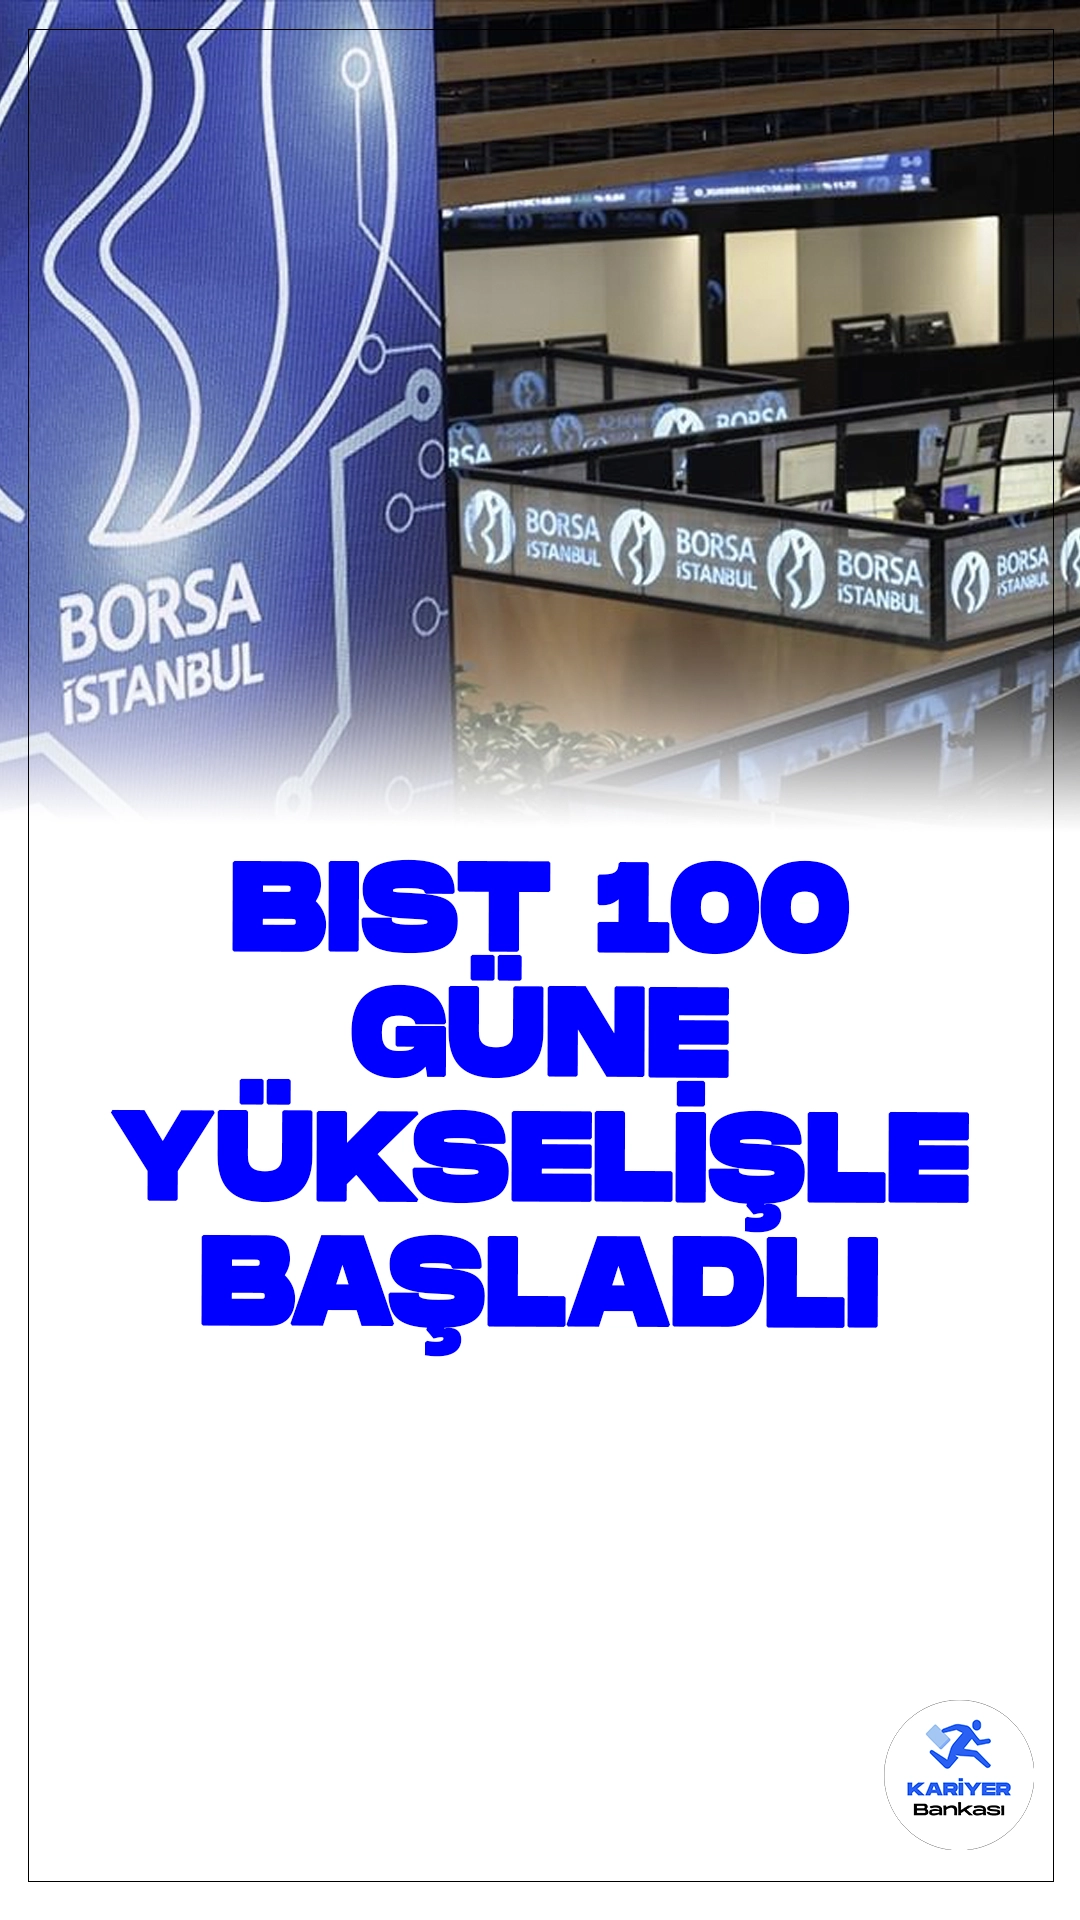 Borsa İstanbul'da BIST 100 Endeksi Güne Yükselişle Başladı.Güne pozitif bir başlangıç yapan Borsa İstanbul, BIST 100 endeksinde yüzde 0,15'lik artışla 10.282,75 puandan açıldı.